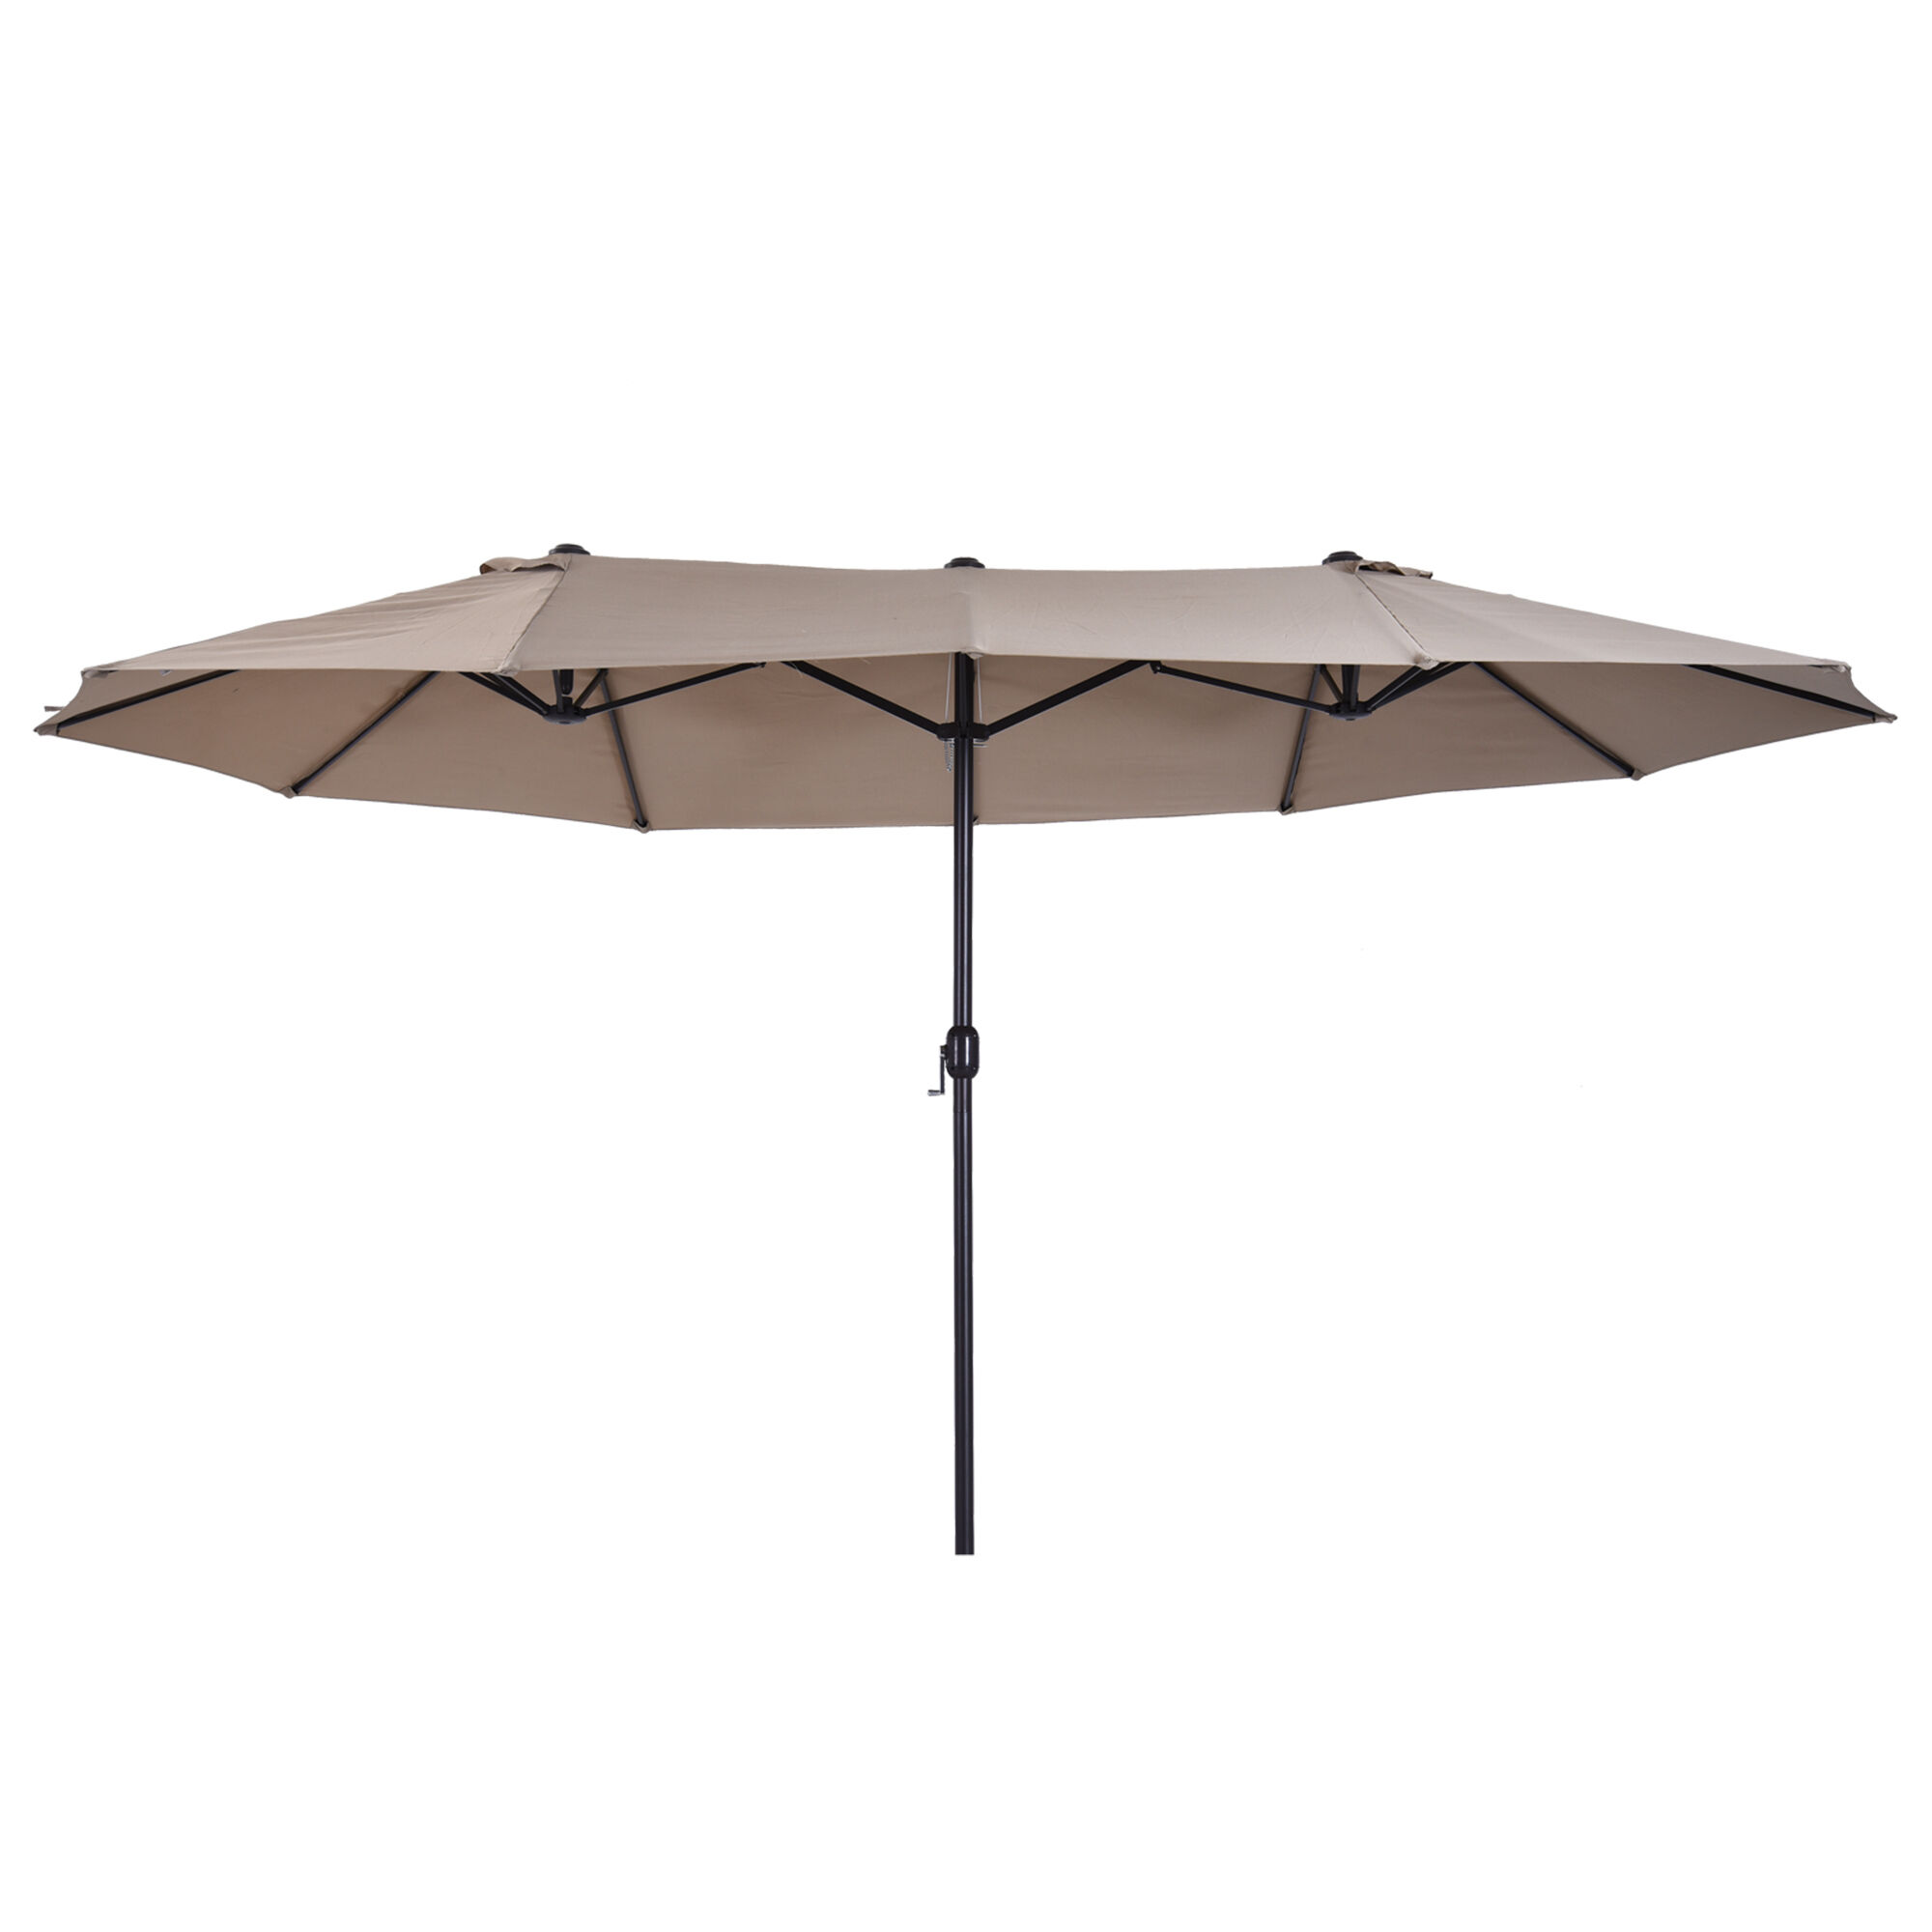 Outsunny Parasol XXL Composé de 12 entretoises en métal Tissu polyester haute densité 180 g/m² Diamètre latérale du parasol: 2,7 m marron